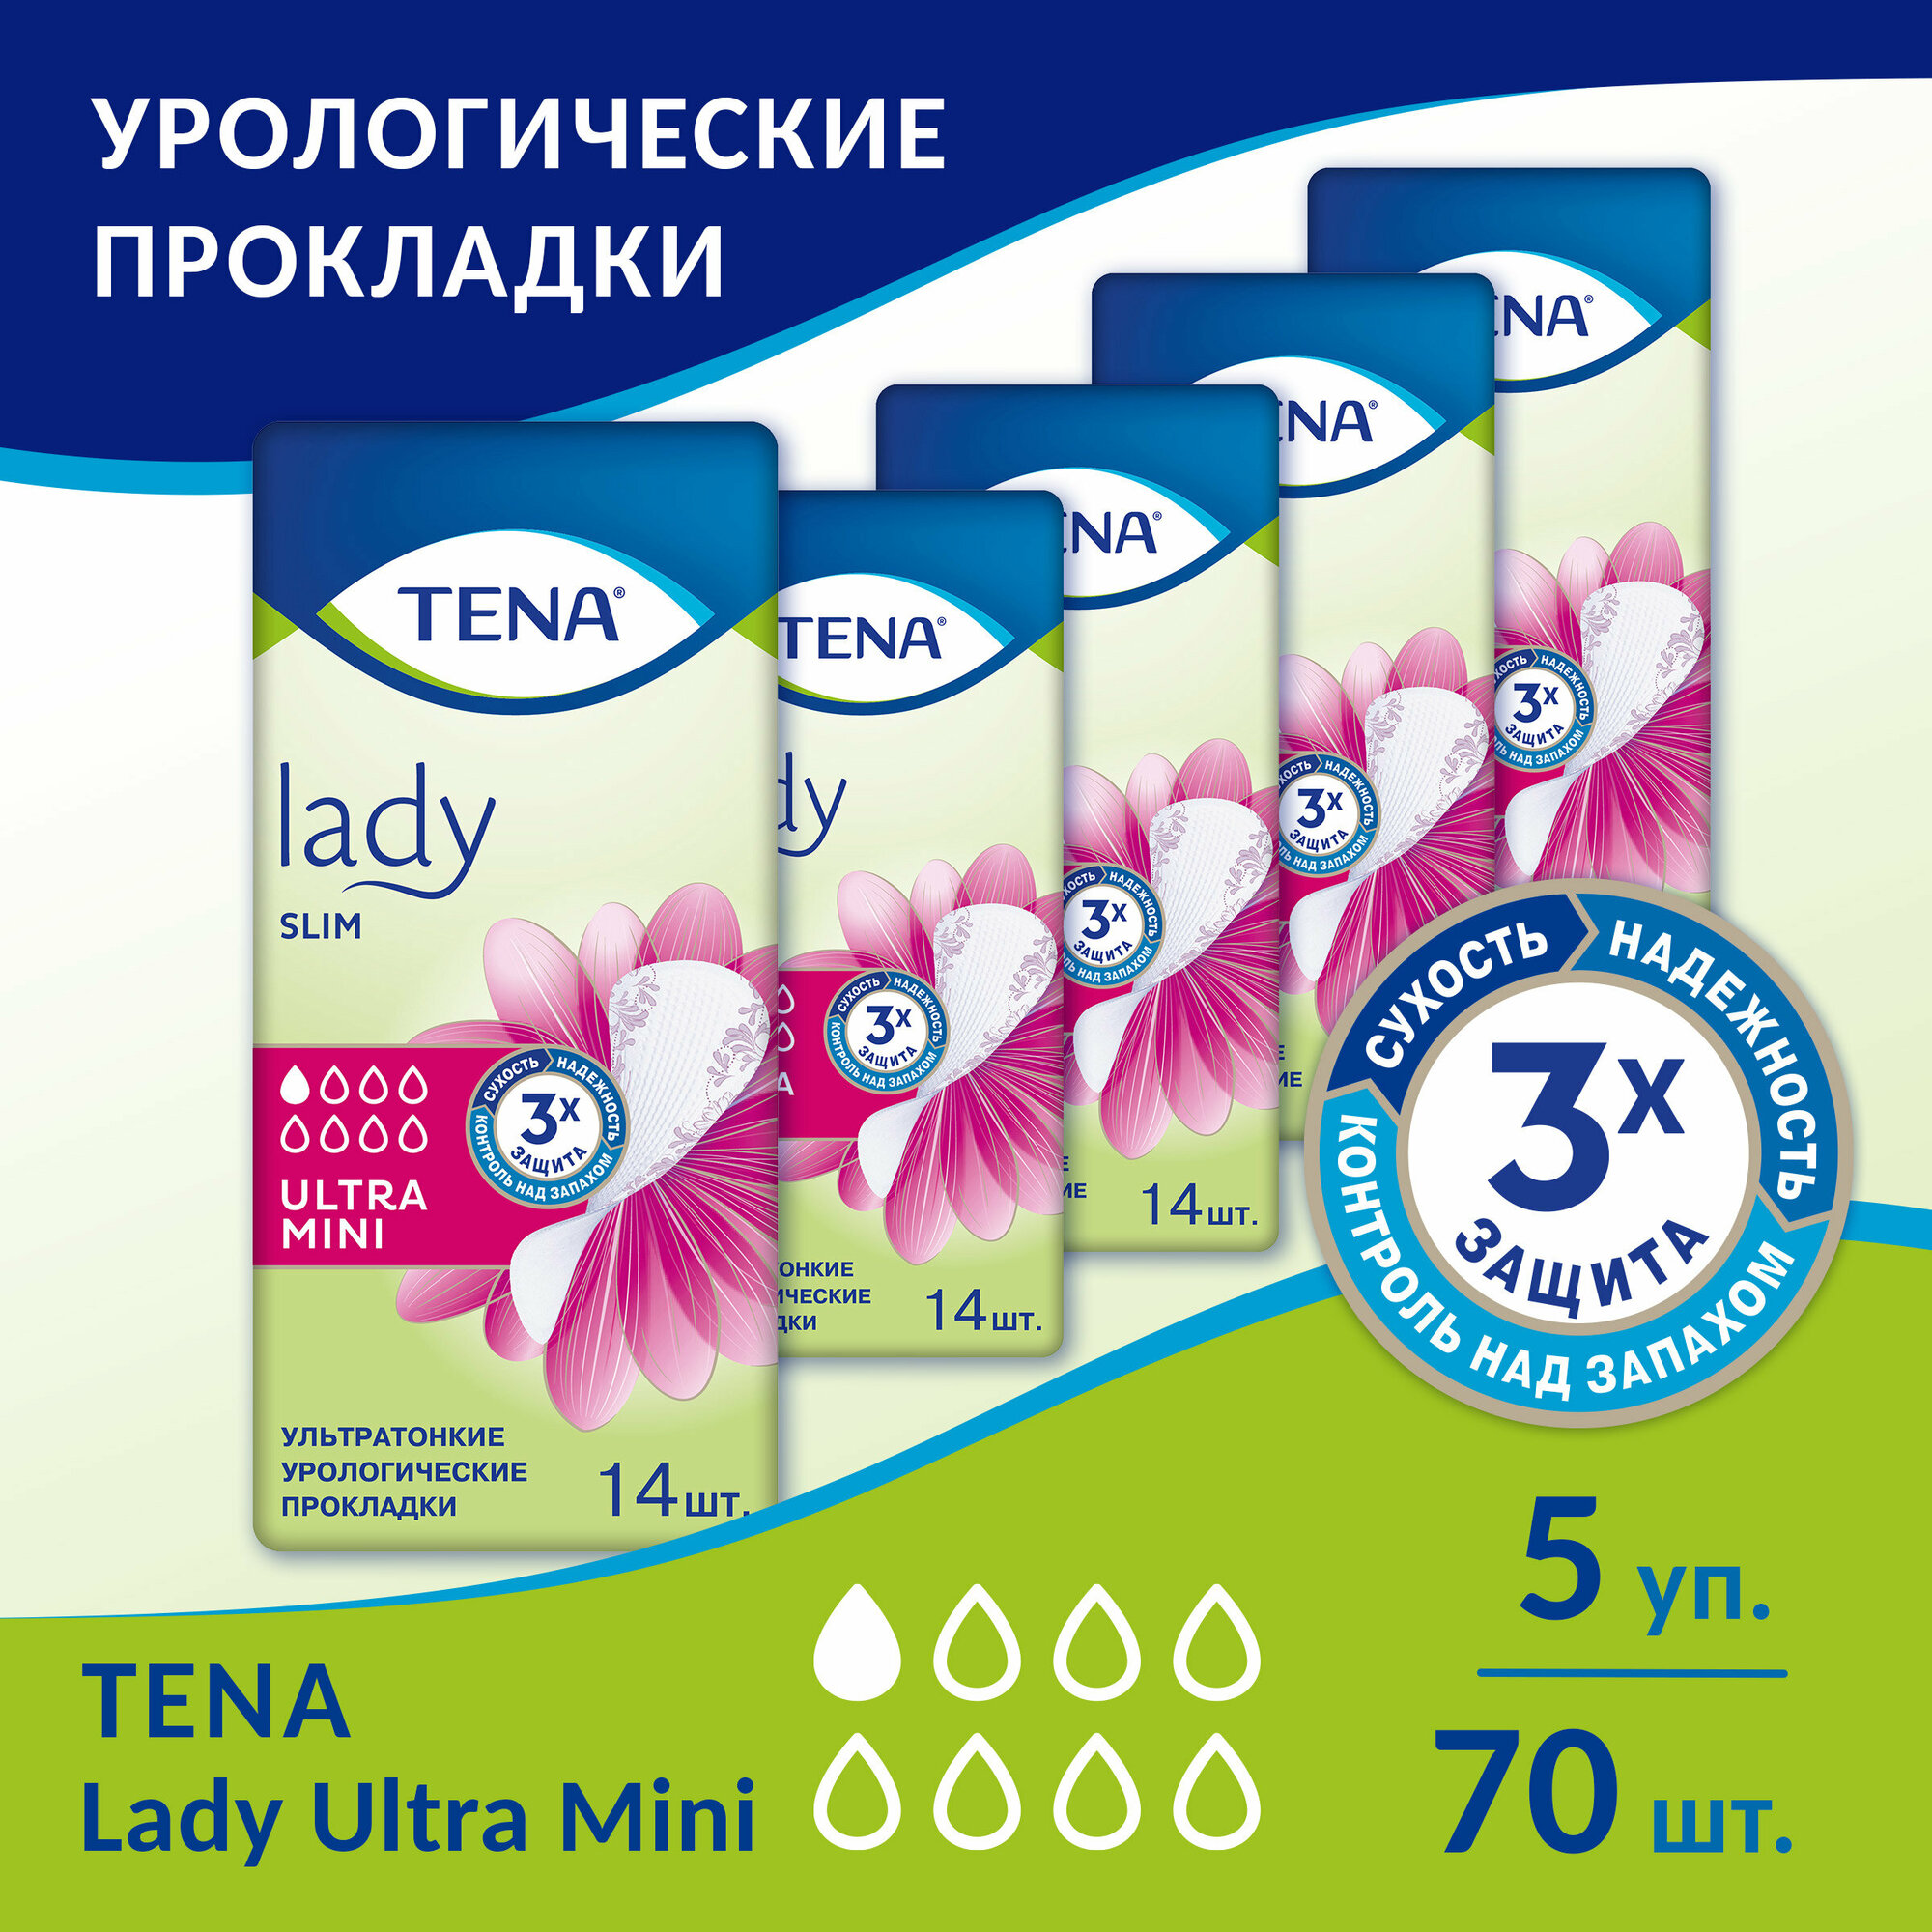 Прокладки Tena Lady Slim Ultra Mini, 14 шт. x 5 упак.